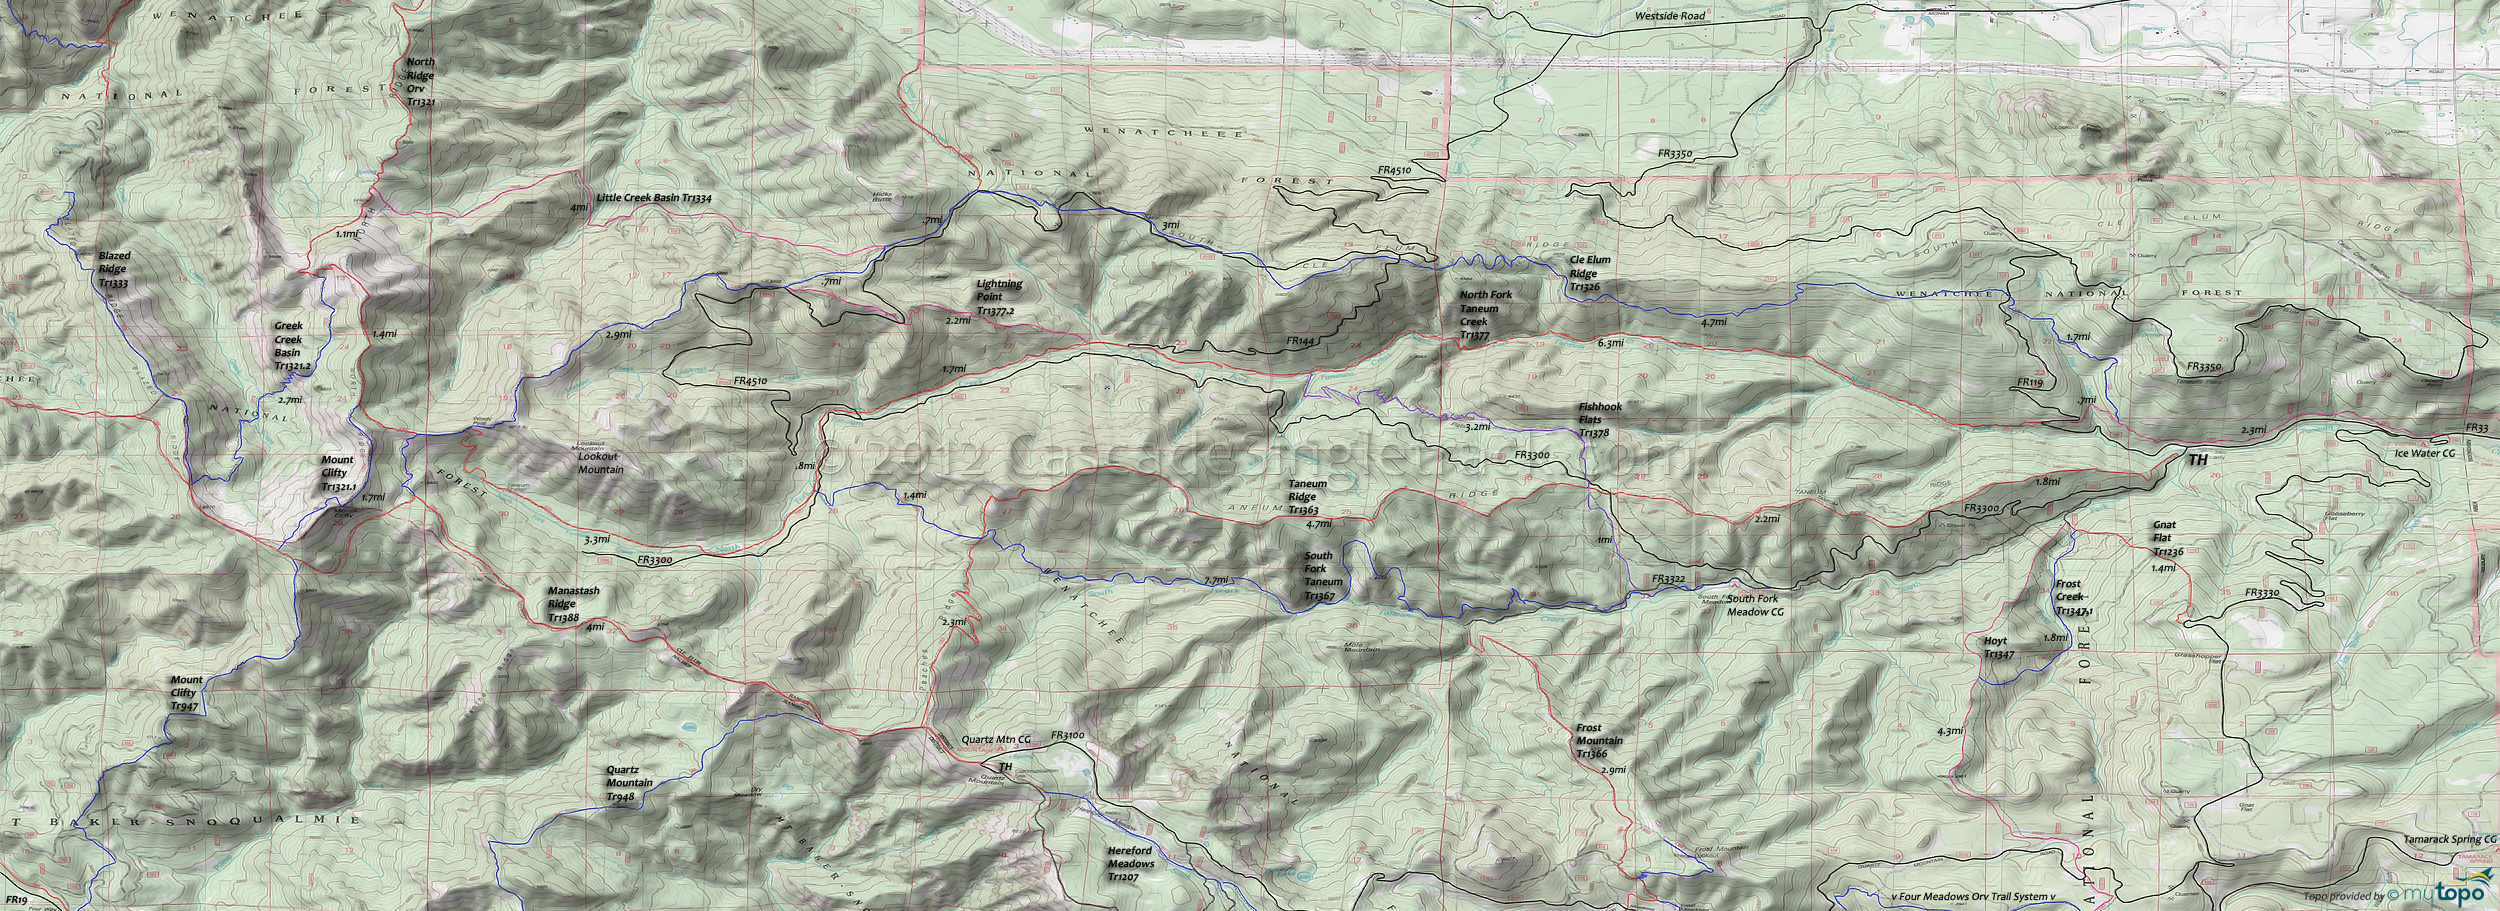 Cle Elum Ridge Trail 1326, Fishhook Flats Trail 1378, Lightning Point Trail 1377.2, Little Creek Basin Trail 1334, Manastash Ridge Trail 1388, North Fork Taneum Trail 1377, Taneum Ridge Trail 1363, South Fork Taneum Trail 1367 Area Topo Map